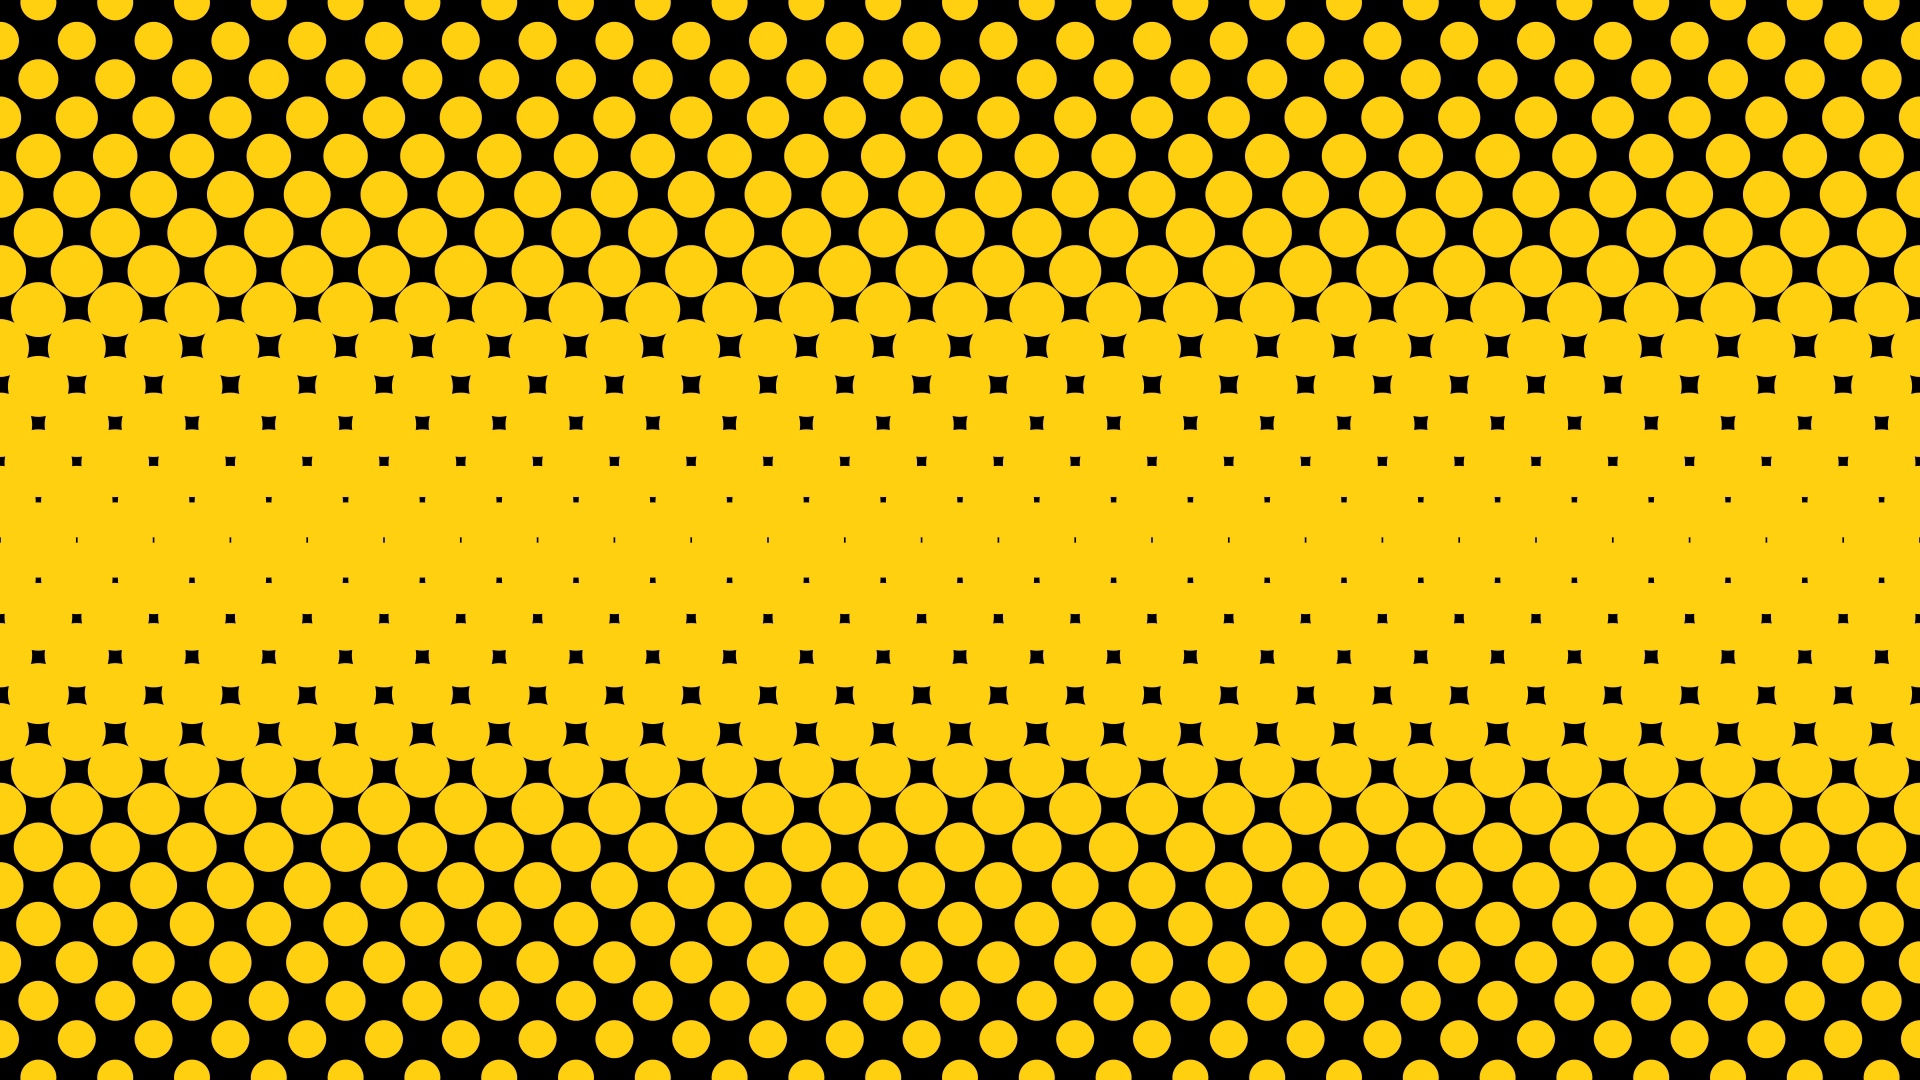 Wallpaper Points Circles Semitone Yellow